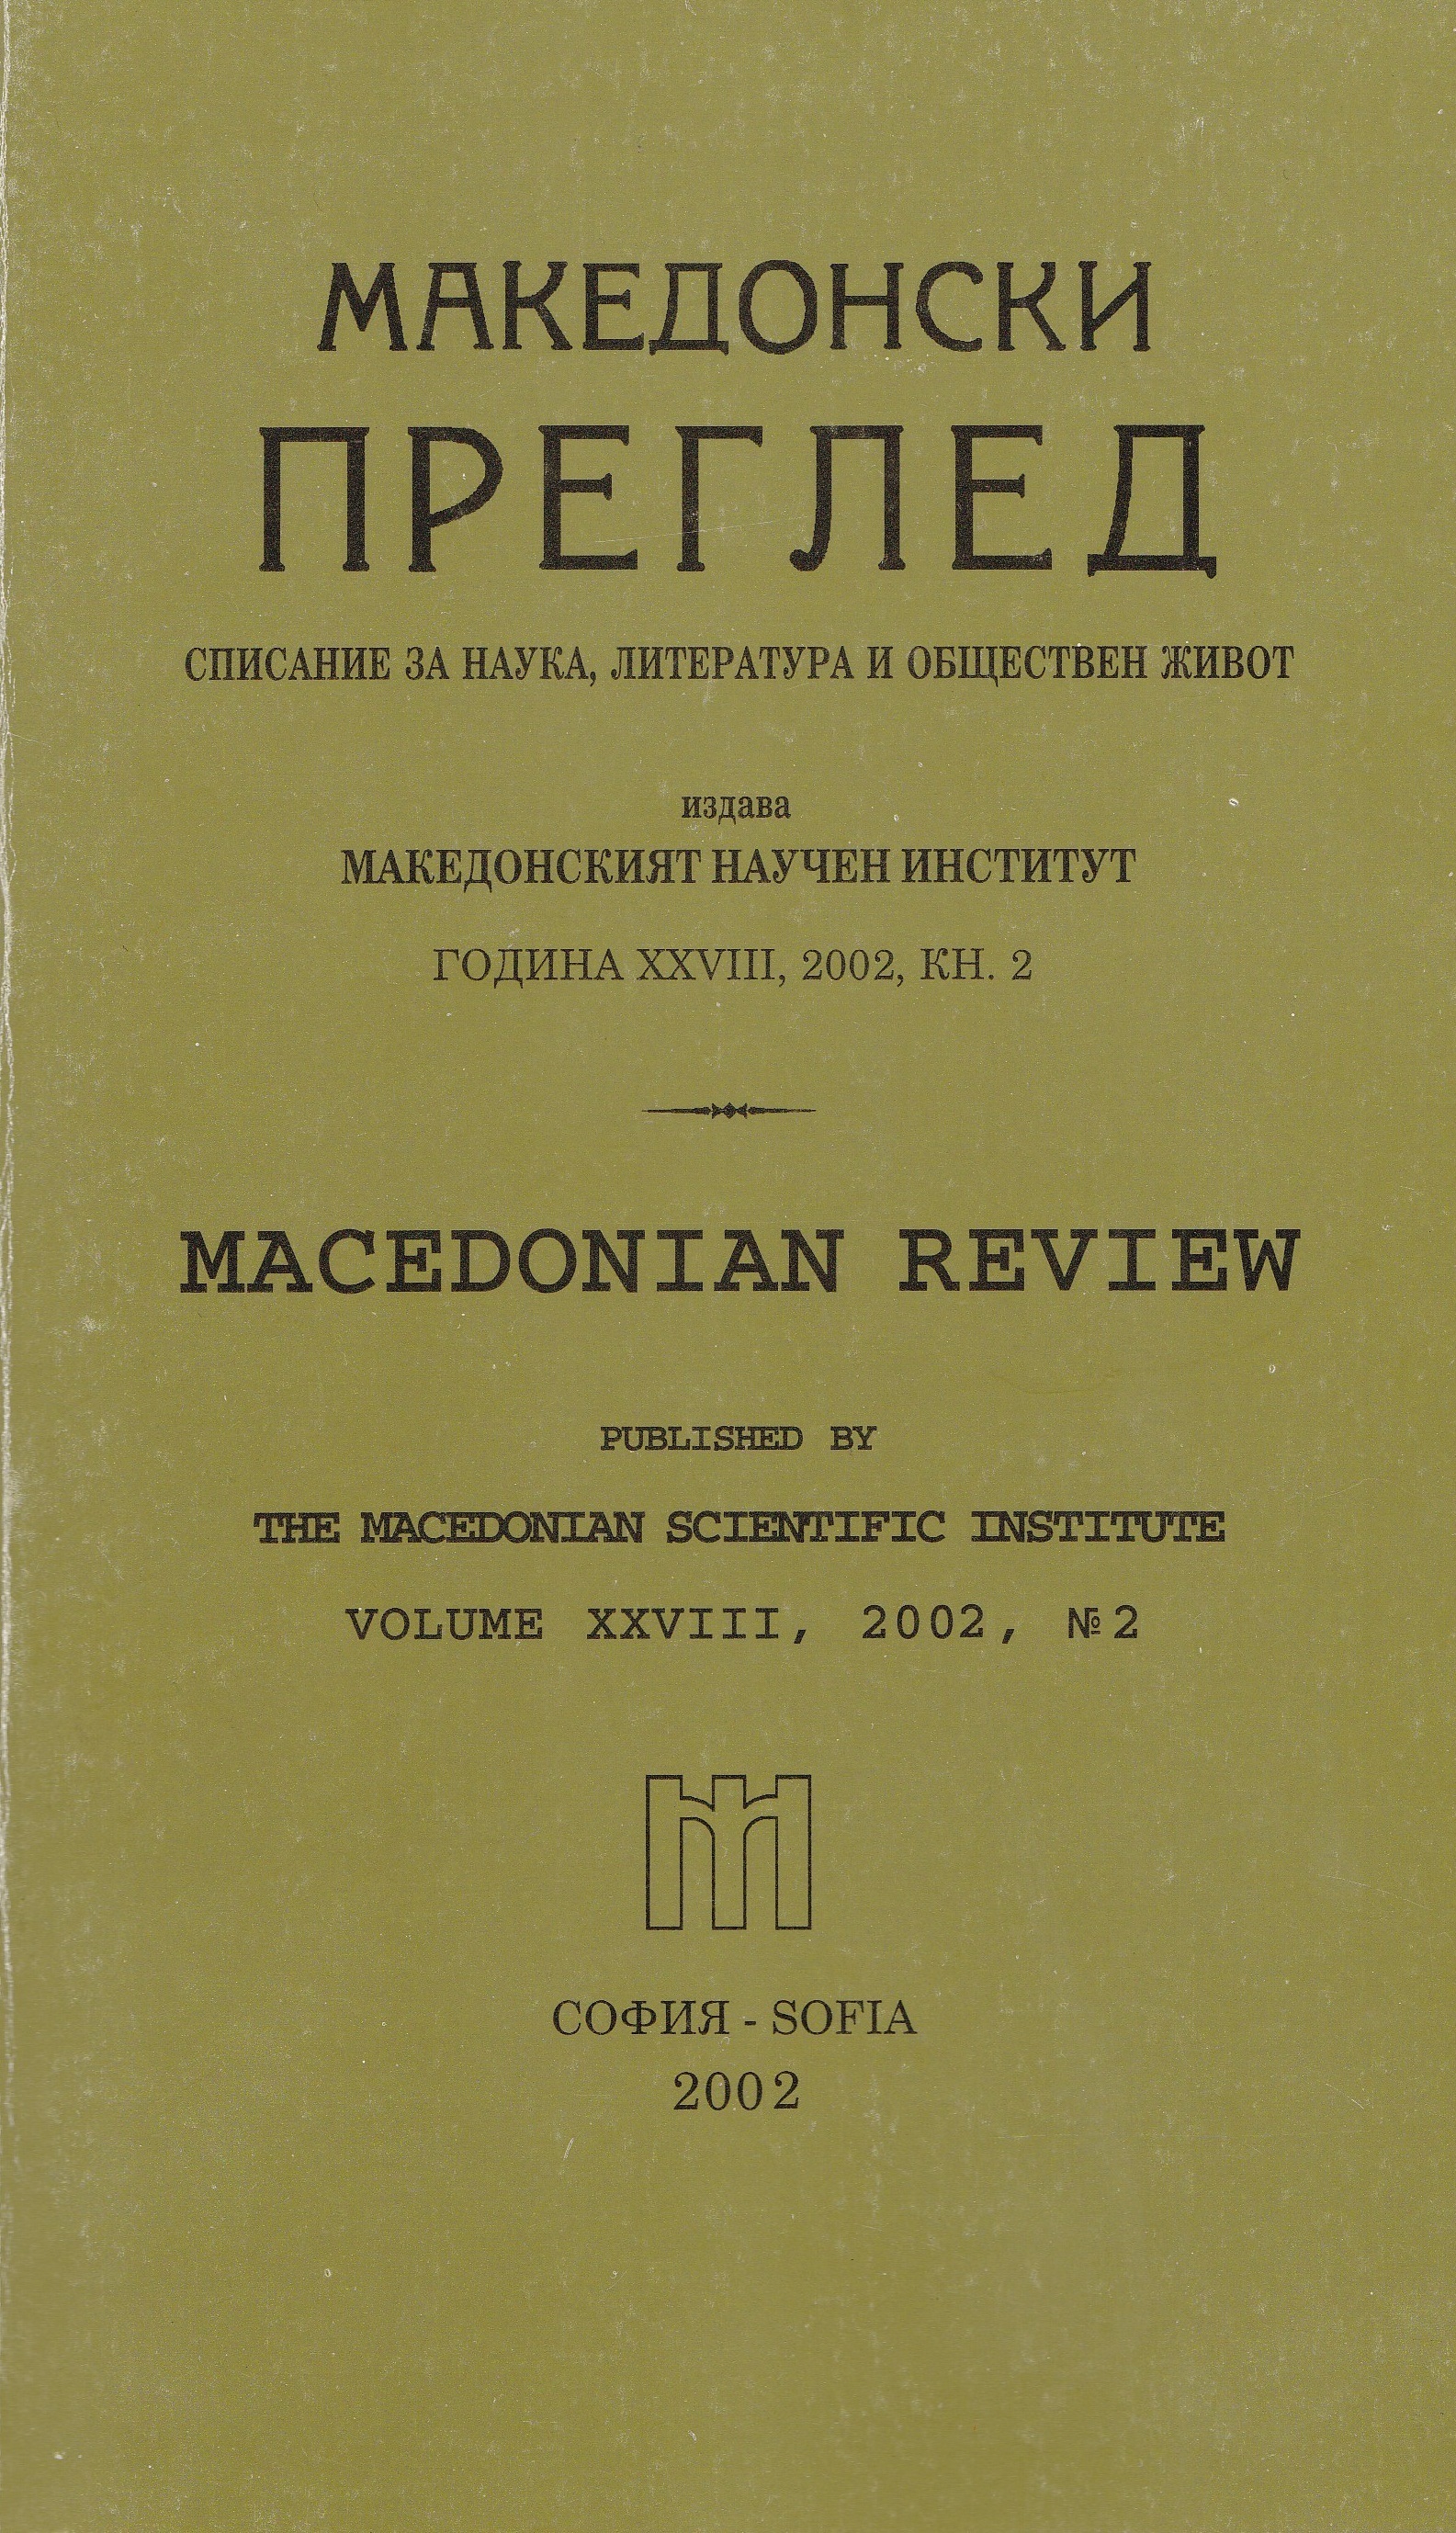 Ролята на народните учители в революционното движение в Македония и Одринско (1893-1903 г.)